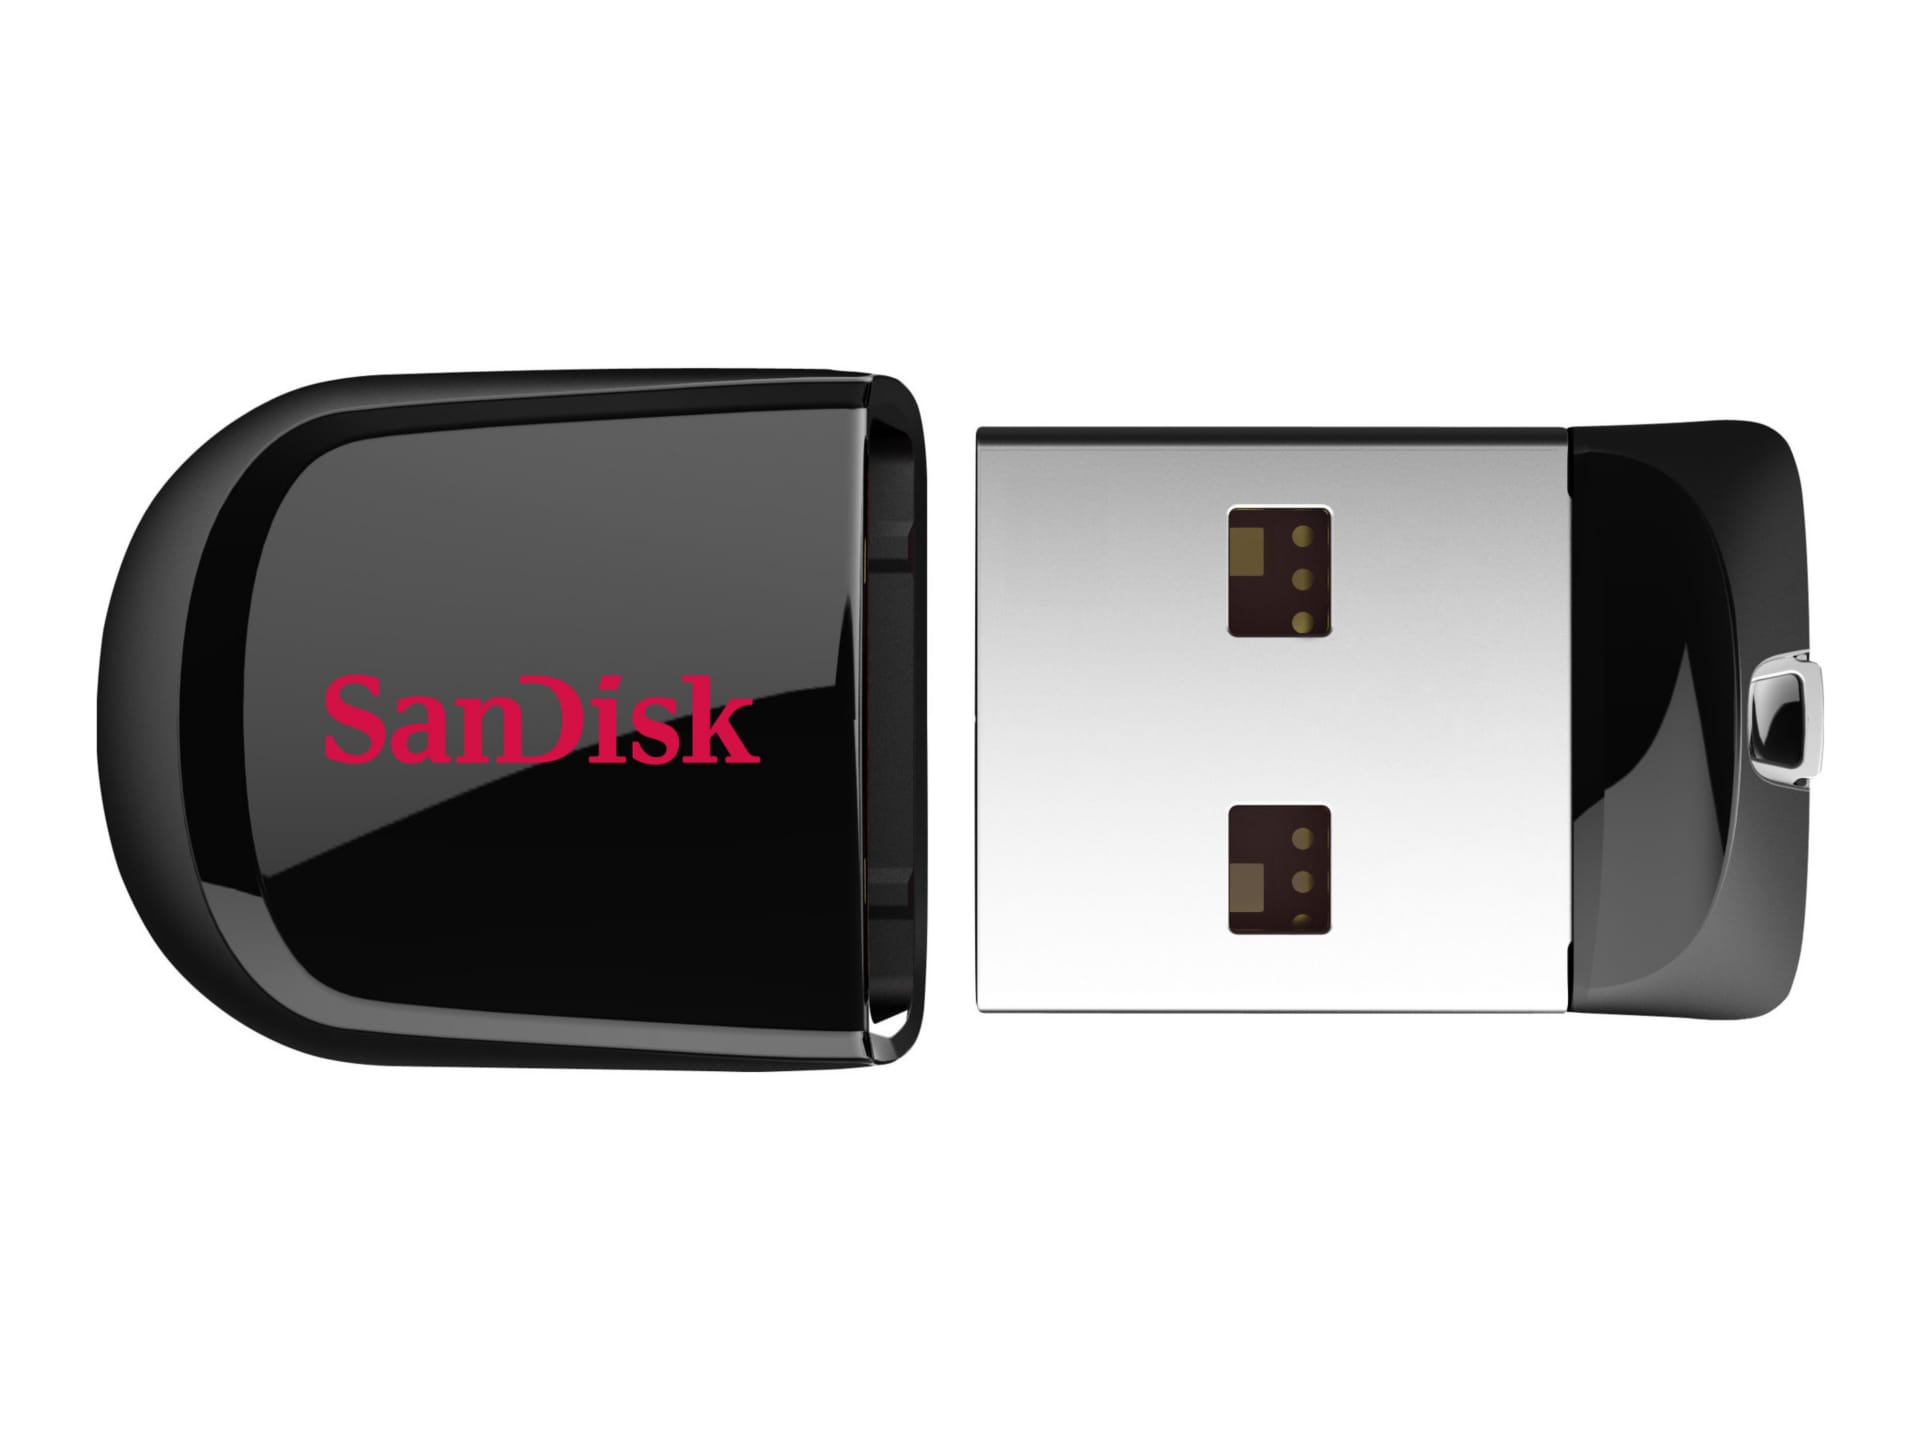 SanDisk Cruzer Fit - USB flash drive - 64 GB